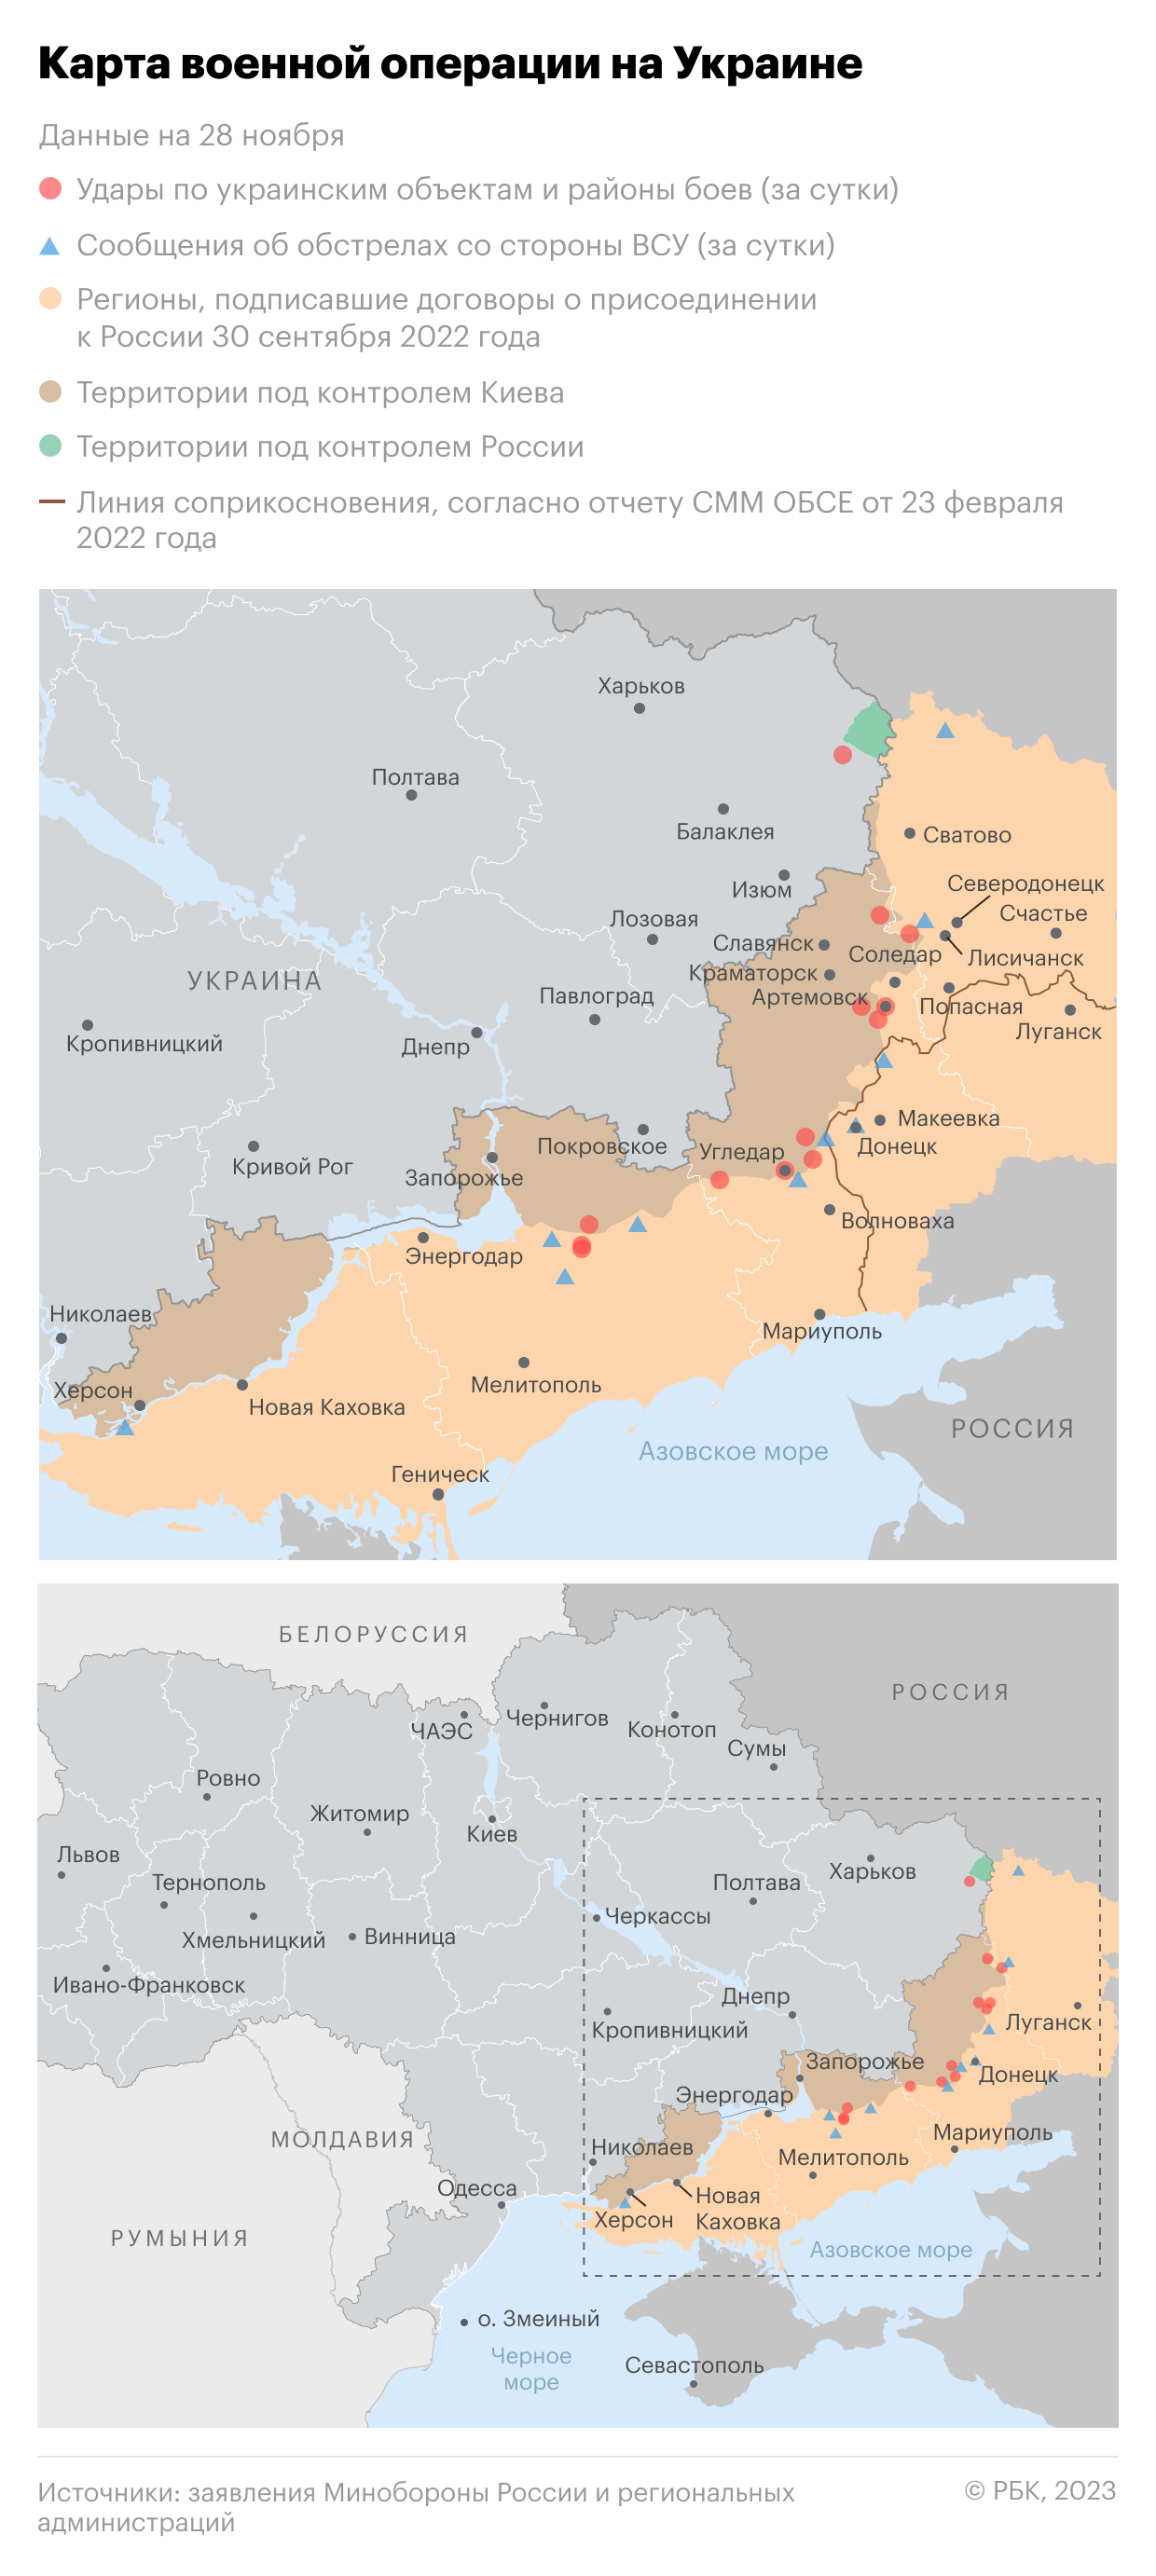 Военная операция на Украине. Карта на 28 ноября